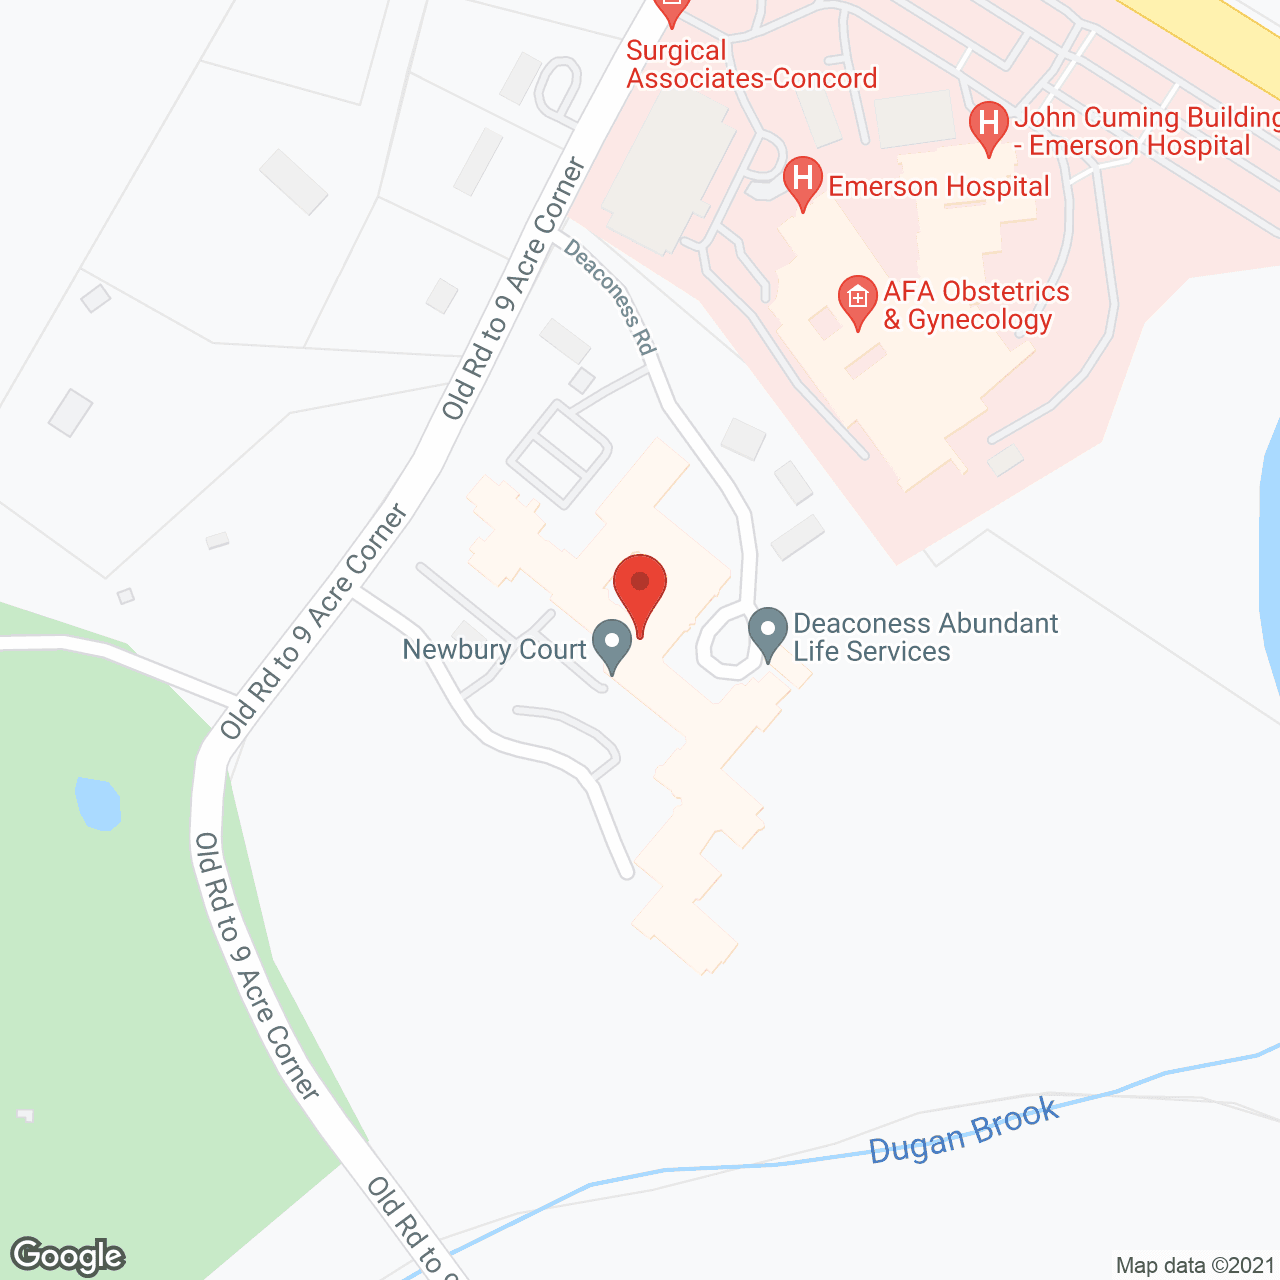 Newbury Court in google map